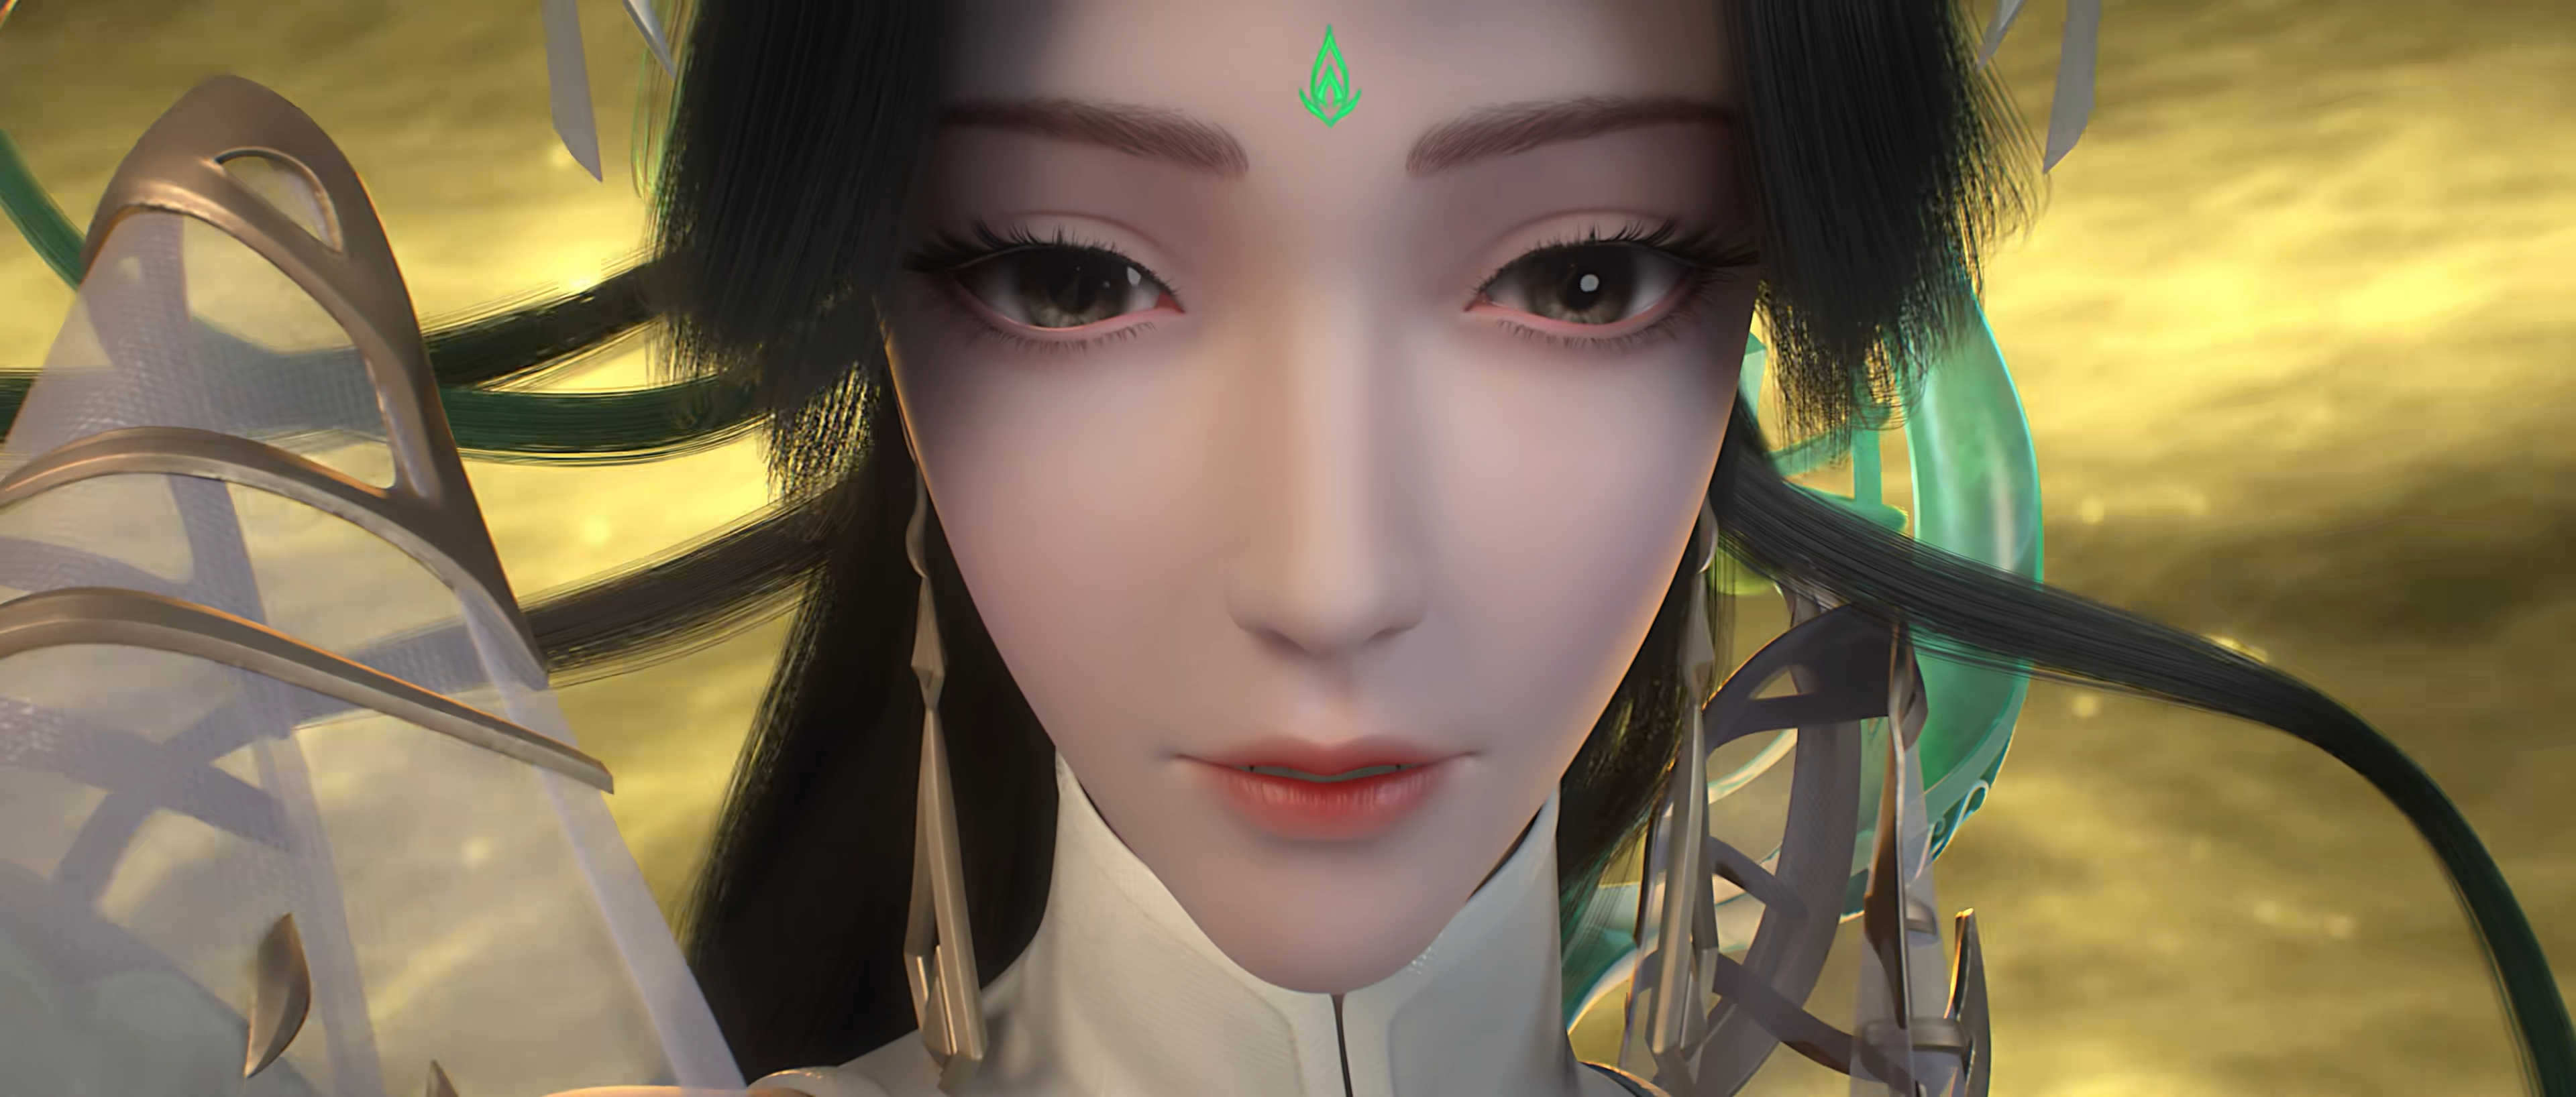 Wan Mei Shi Jie Chinese Anime CGi Asian Women Face Closeup Looking At Viewer Clouds Sky 3840x1636